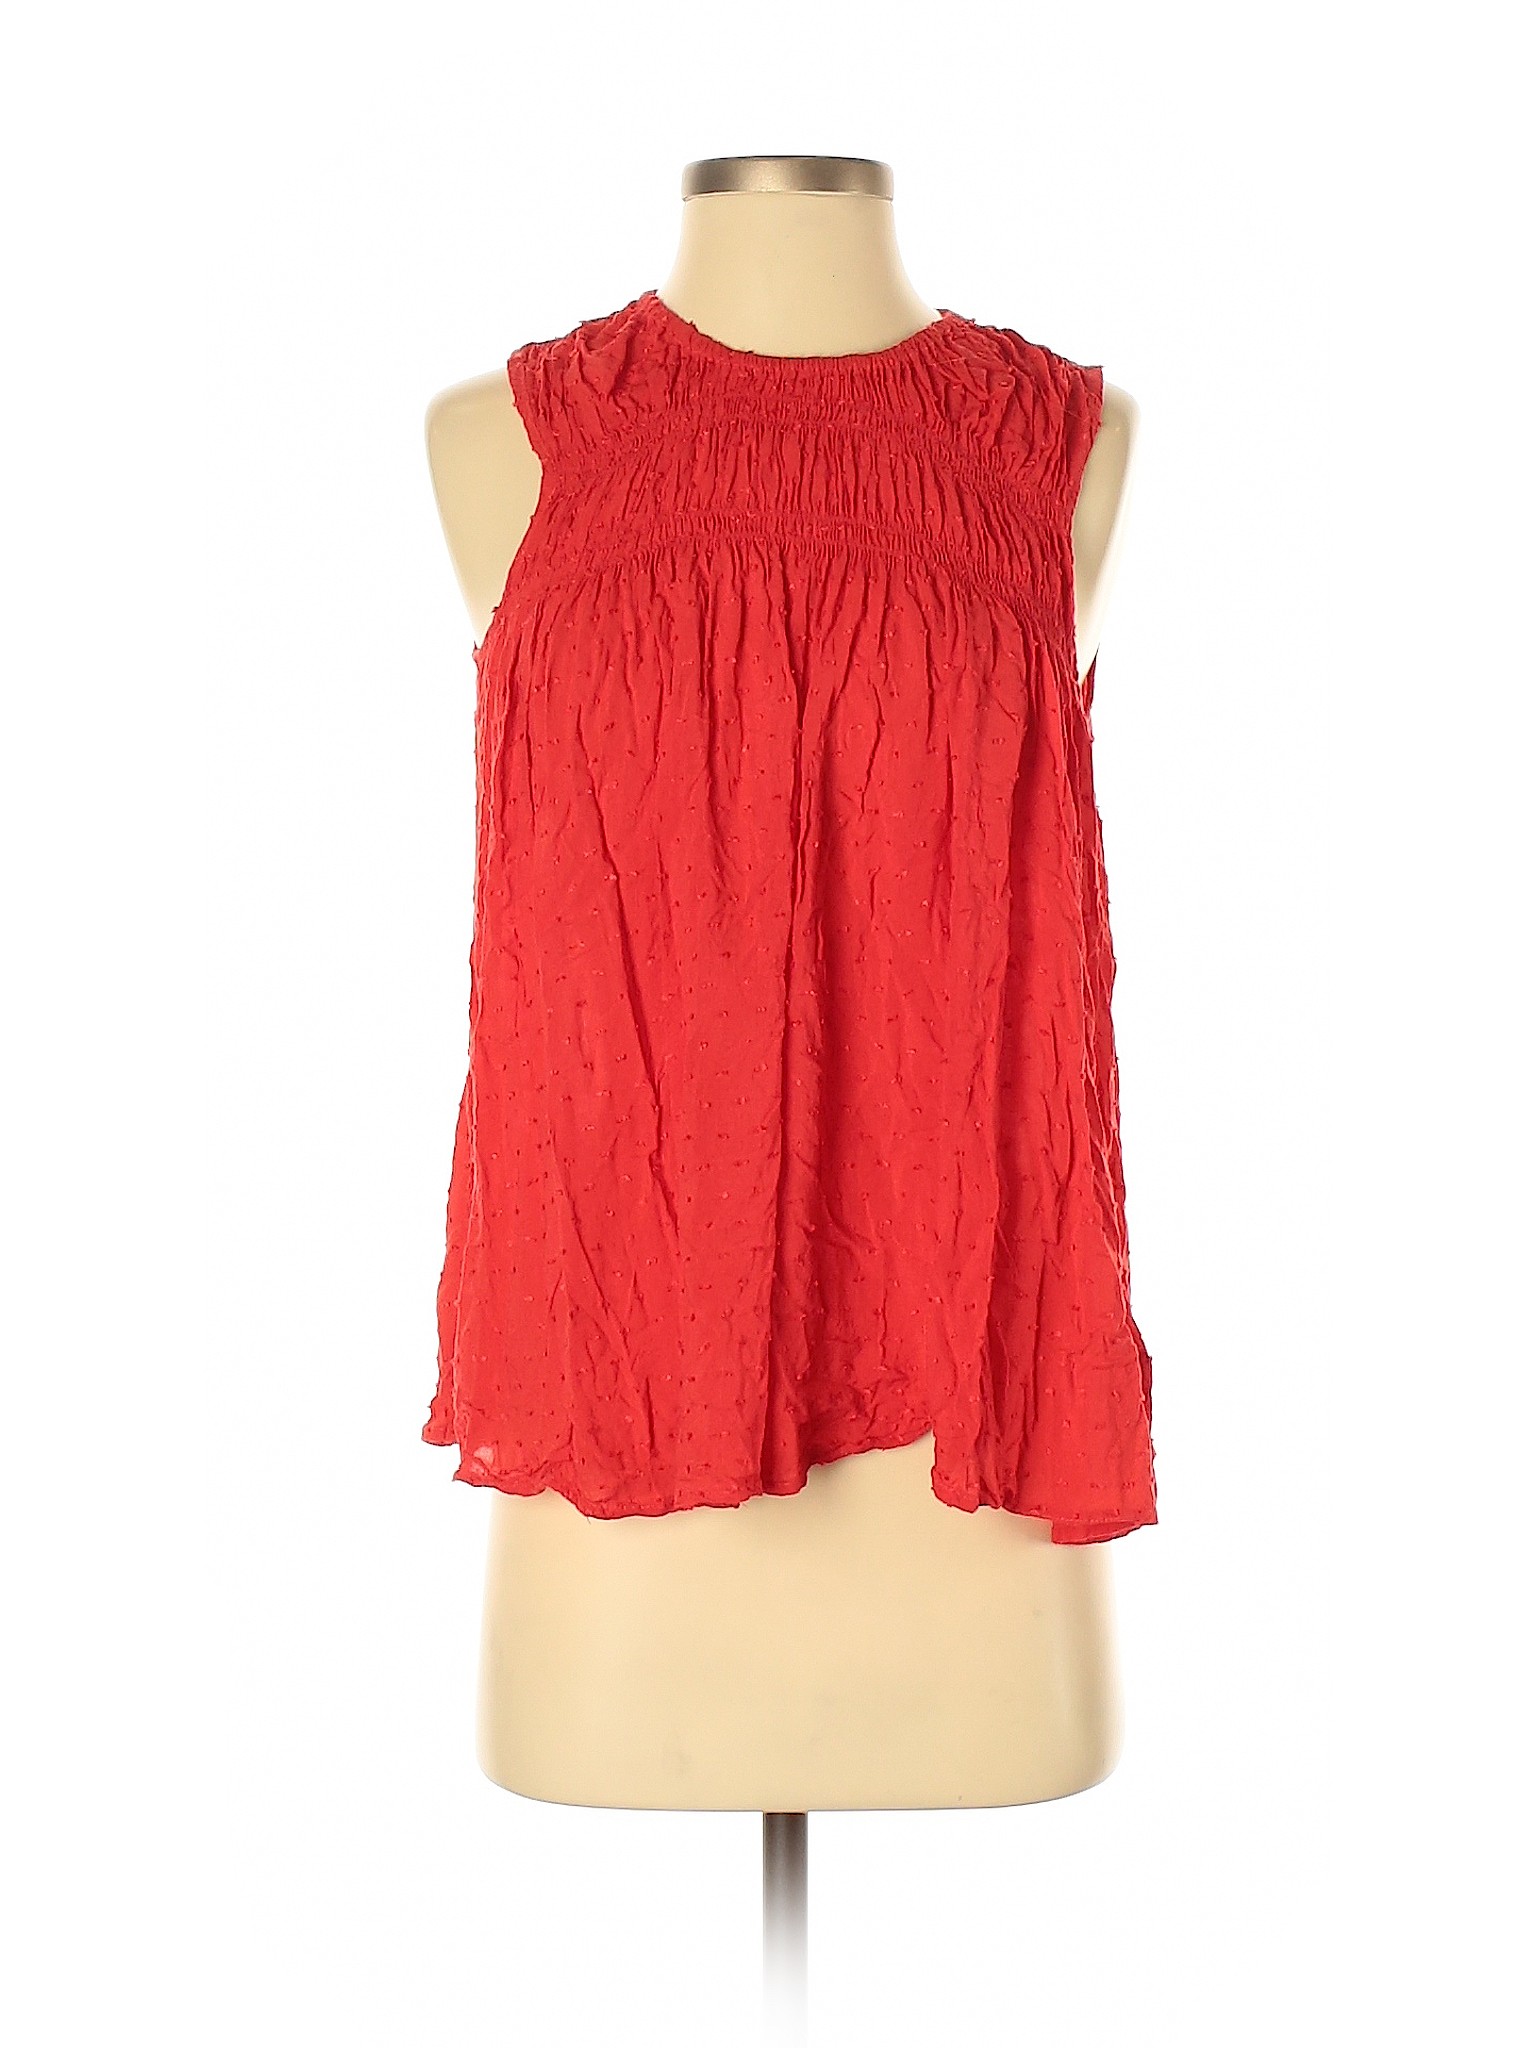 Gap Women Red Sleeveless Blouse S | eBay